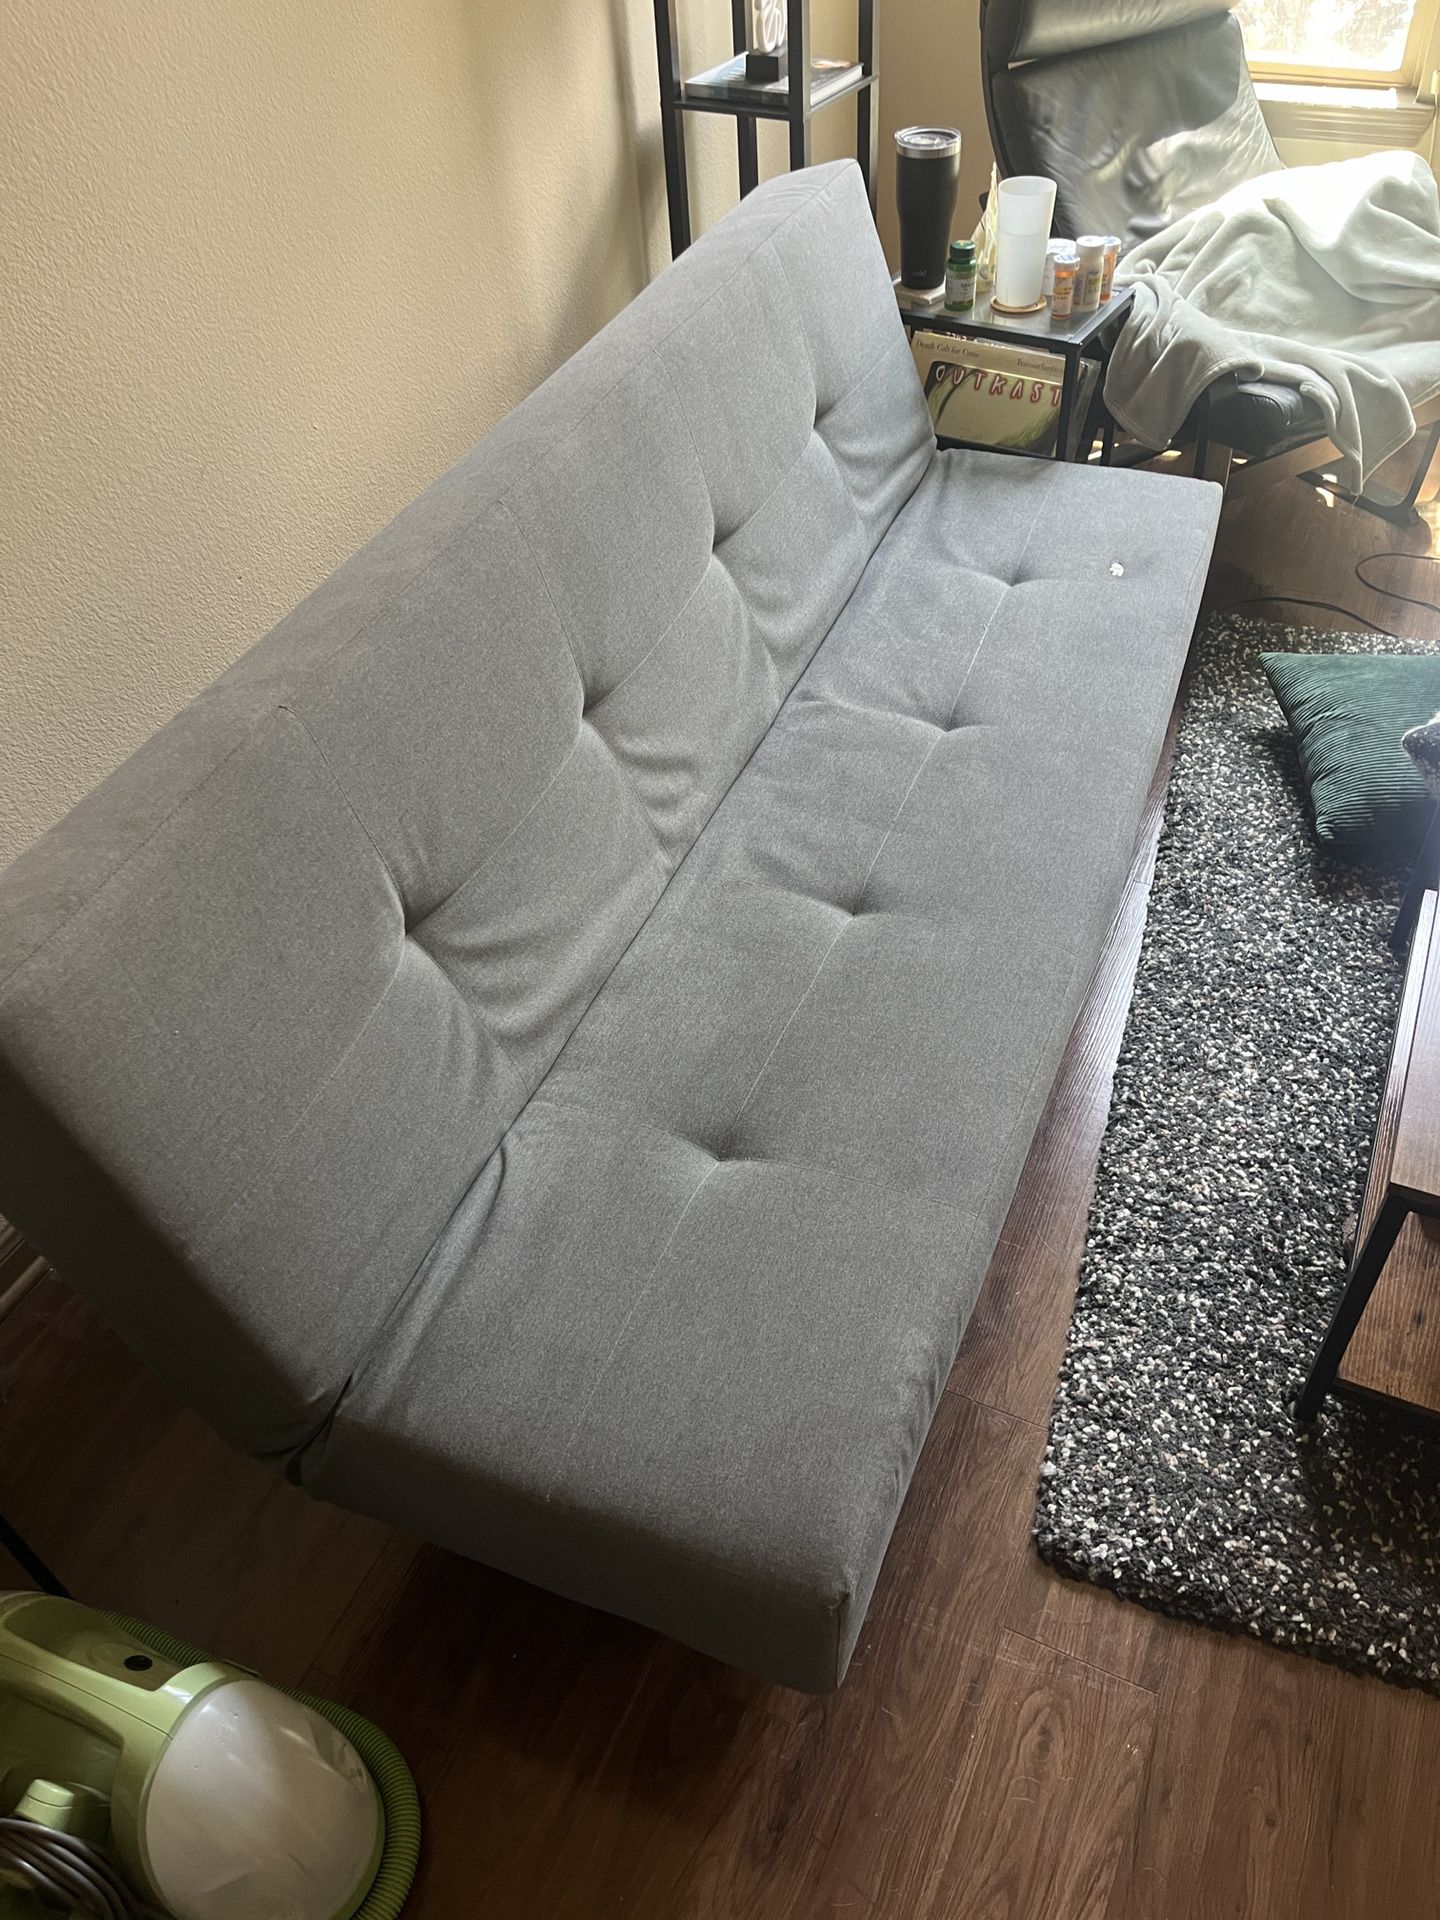 IKEA BALKARP sleeper sofa